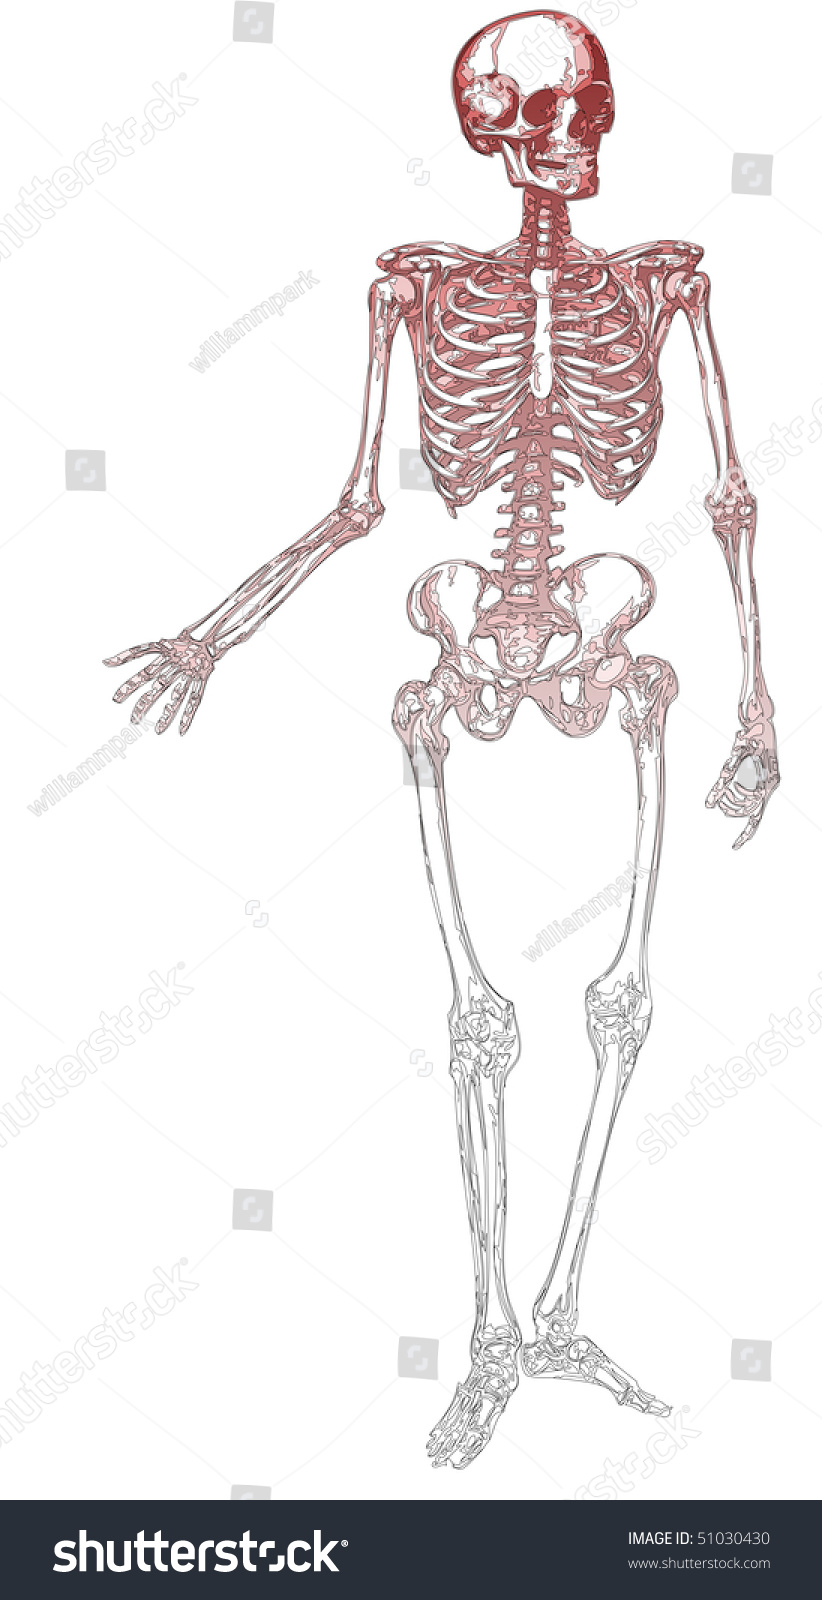 outline-skeleton-stock-vector-illustration-51030430-shutterstock